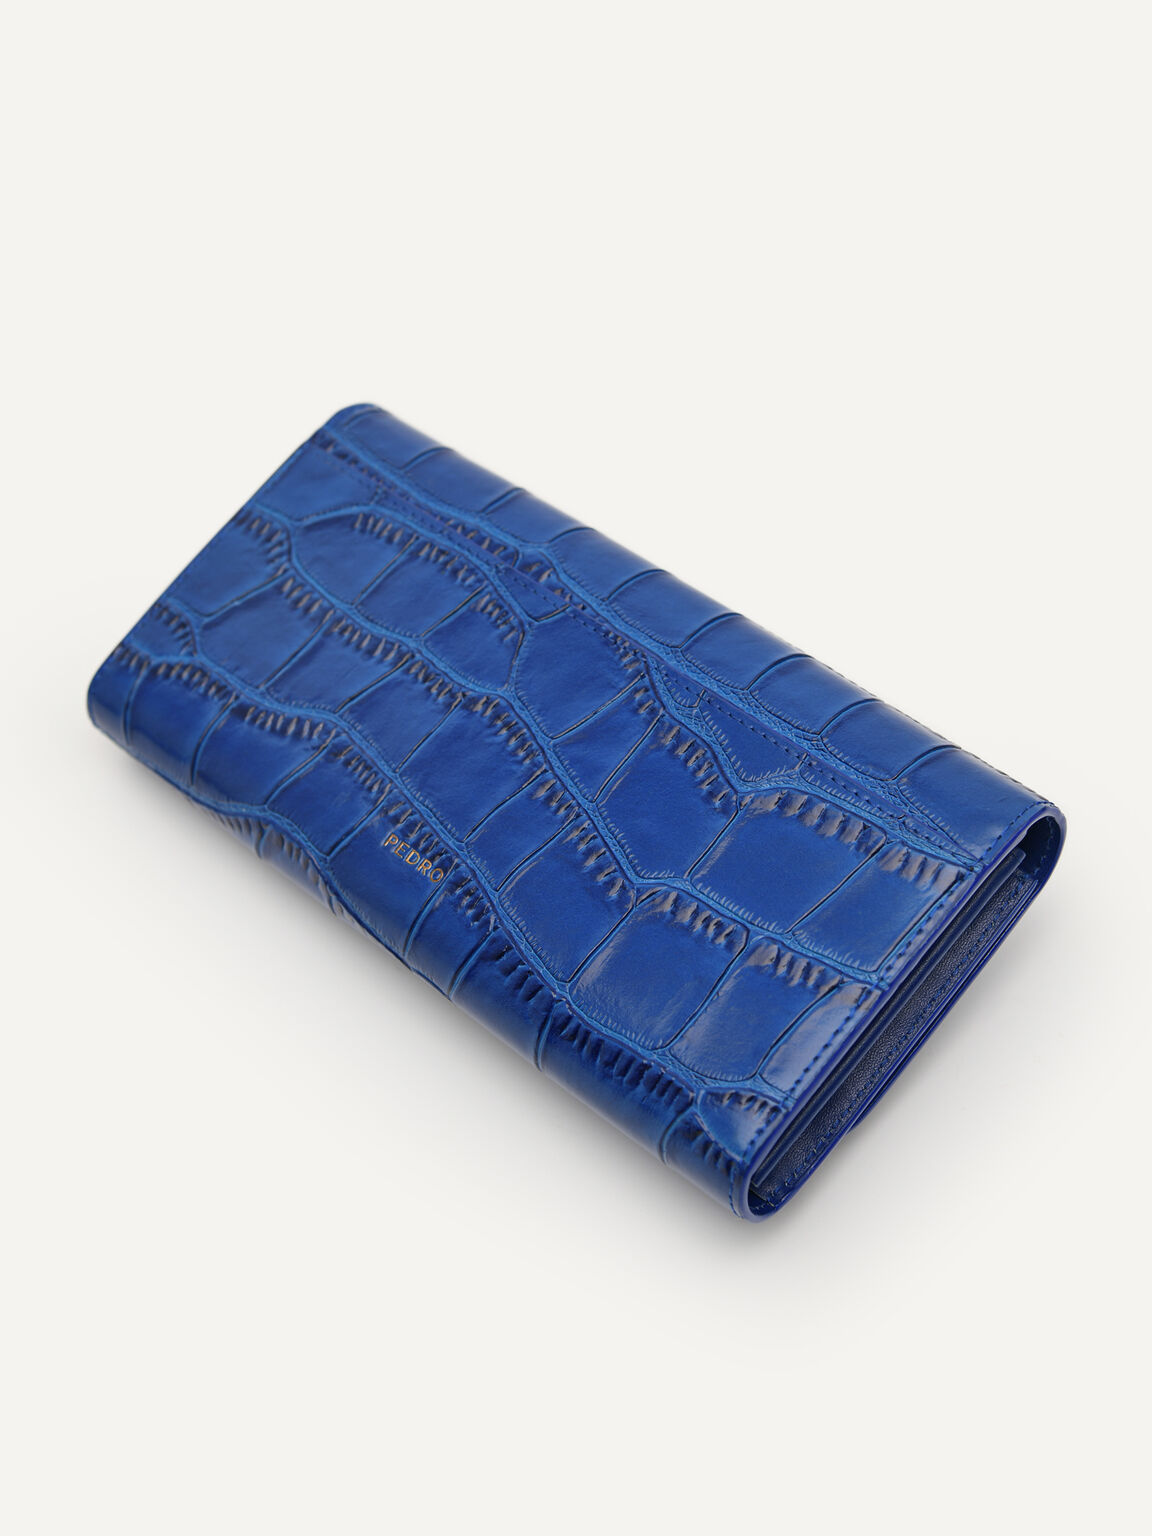 PEDRO工作室雙折疊錢包, 海军蓝色